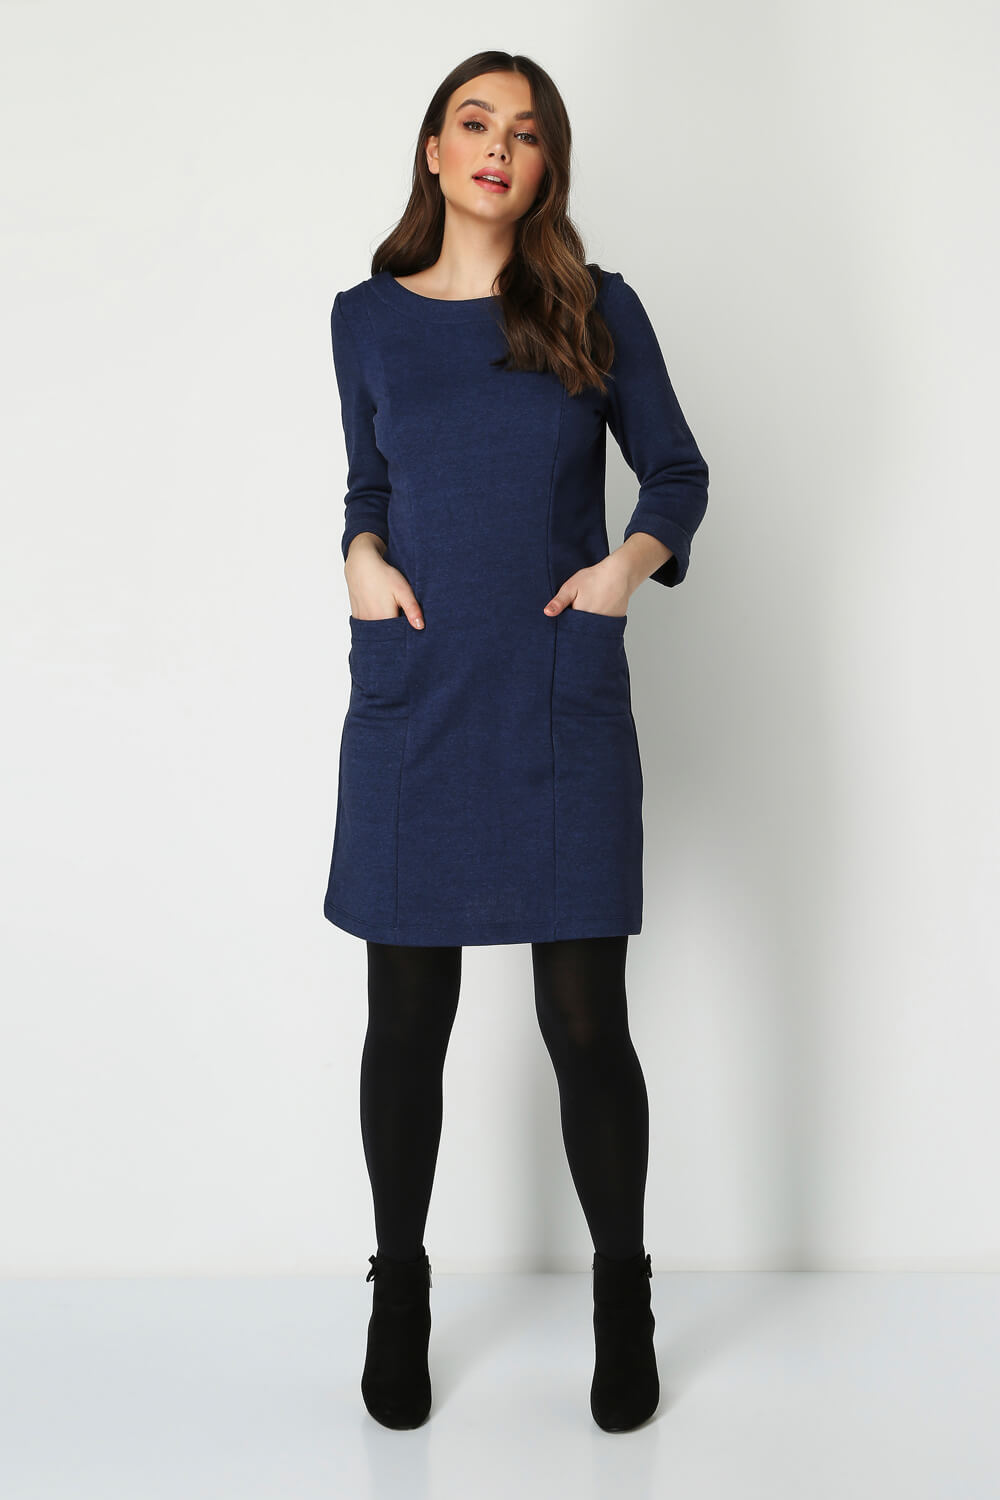 Blue Pocket Detail Shift Dress, Image 3 of 5